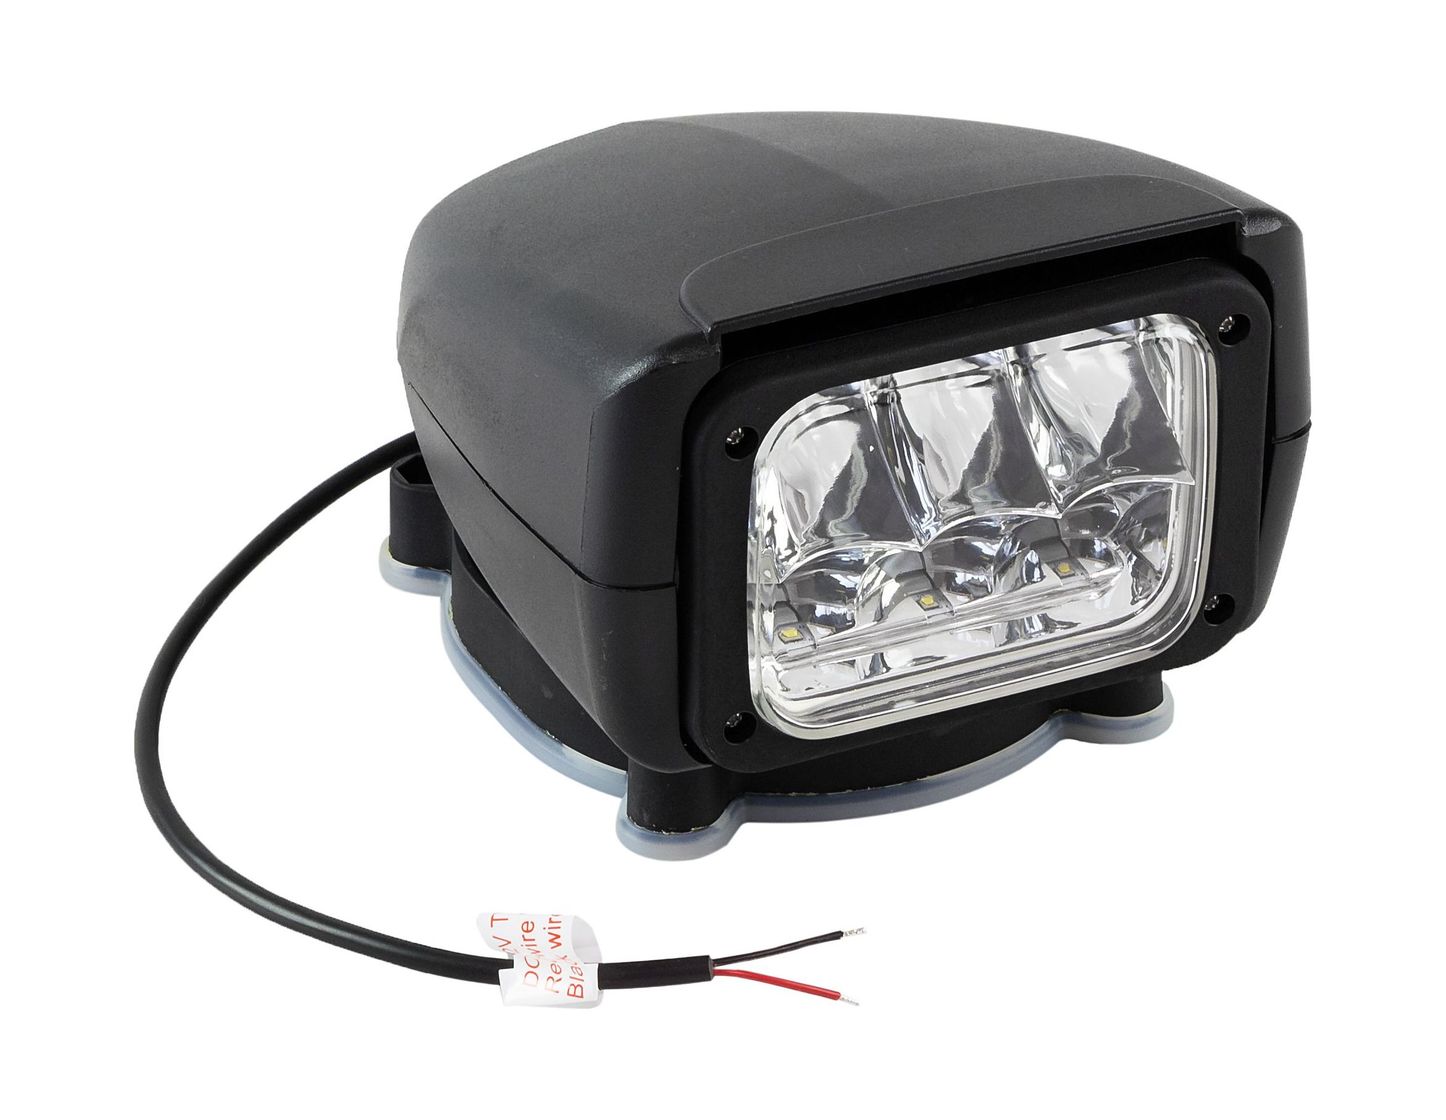 Прожектор с дистанционным управлением, черный корпус, светодиодный, брелок, модель 150 купить c доставкой